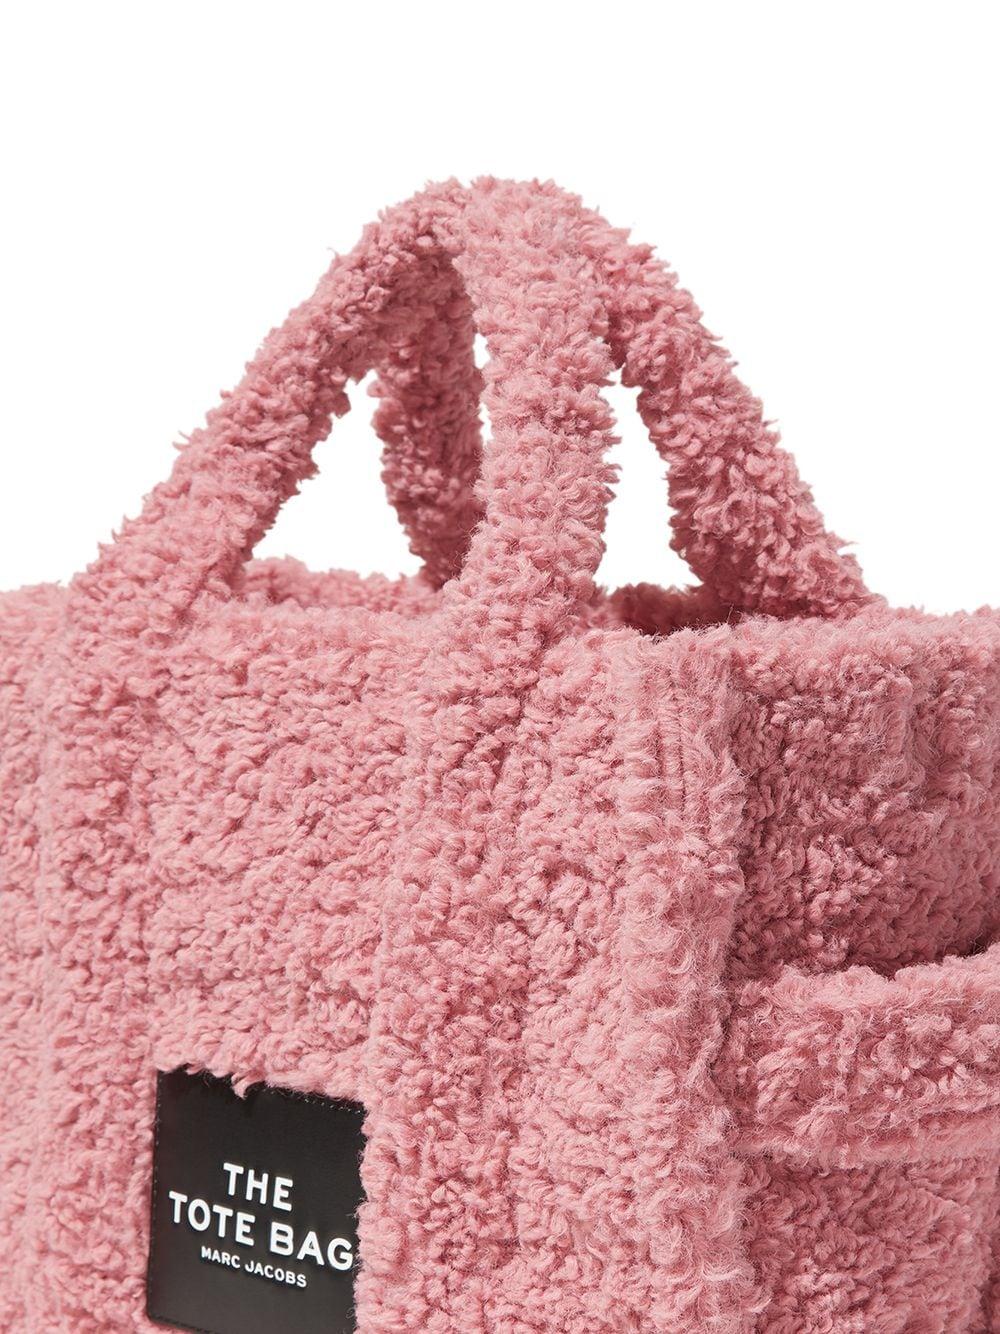 Personalised teddy tote bag